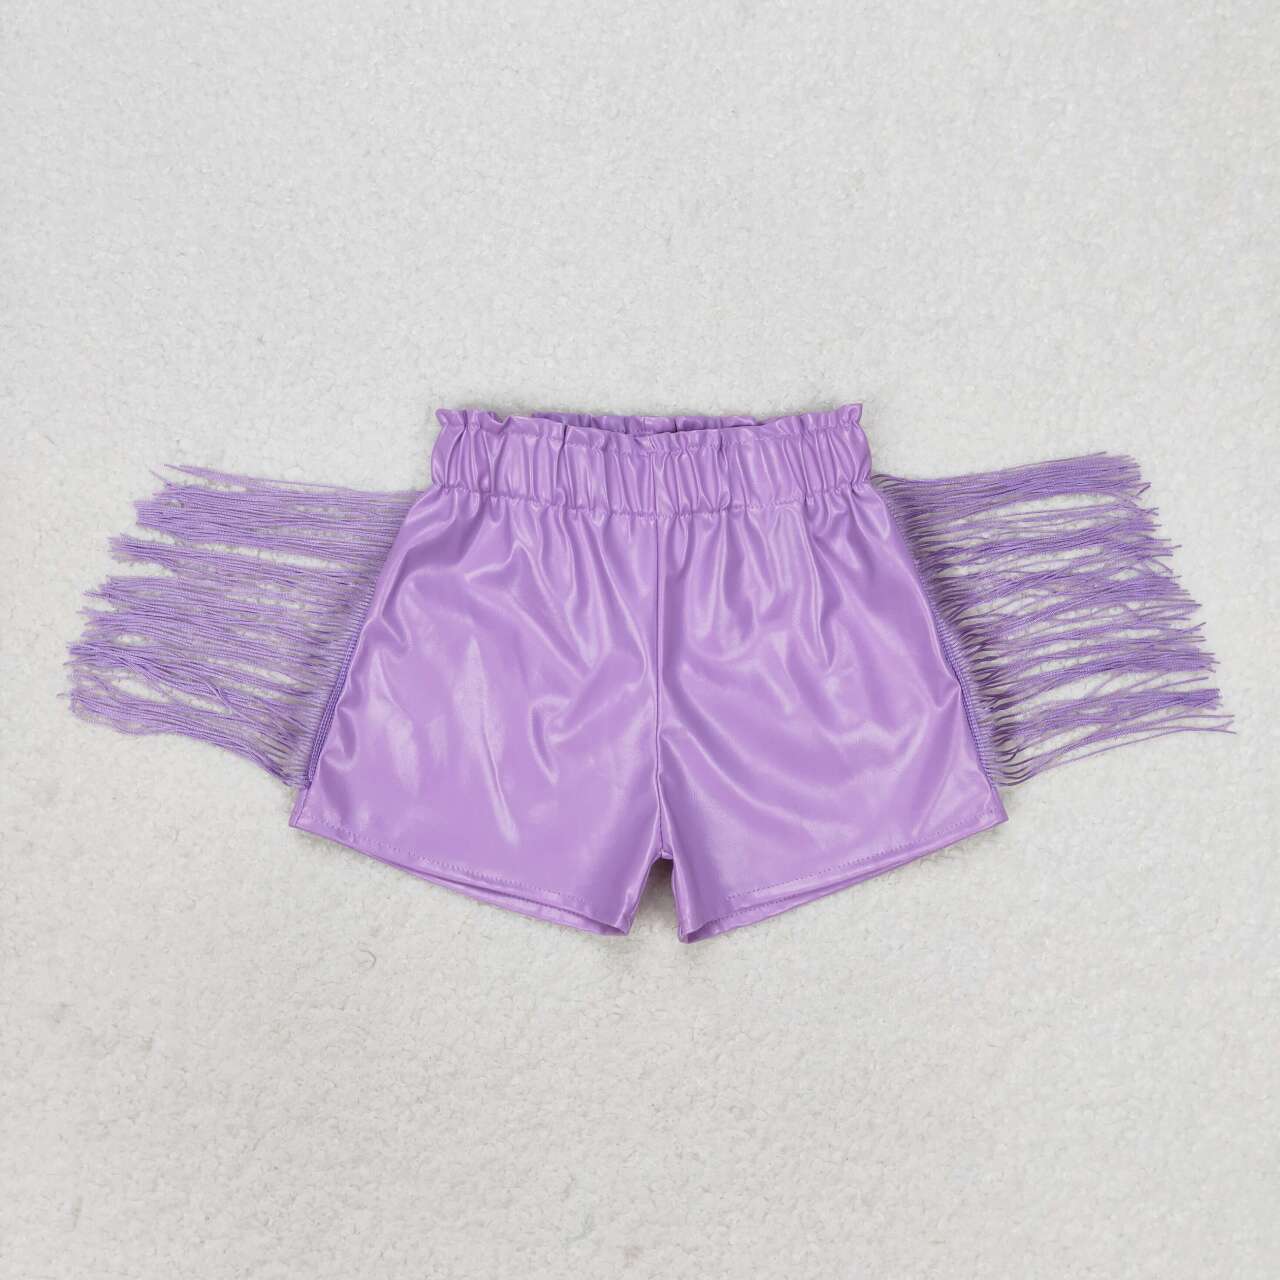 SS0251  Kids Girls summer purple shiny leather fringe shorts